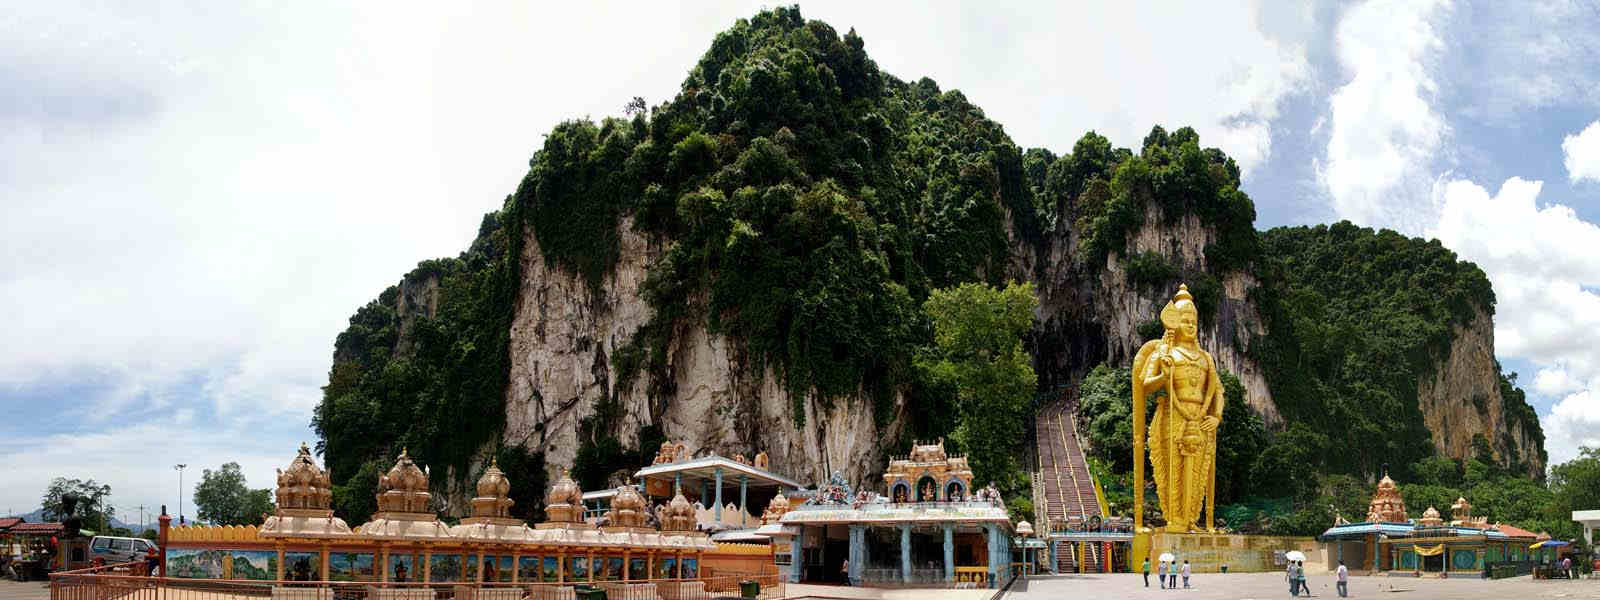 Malaysia Batu Cave Hills